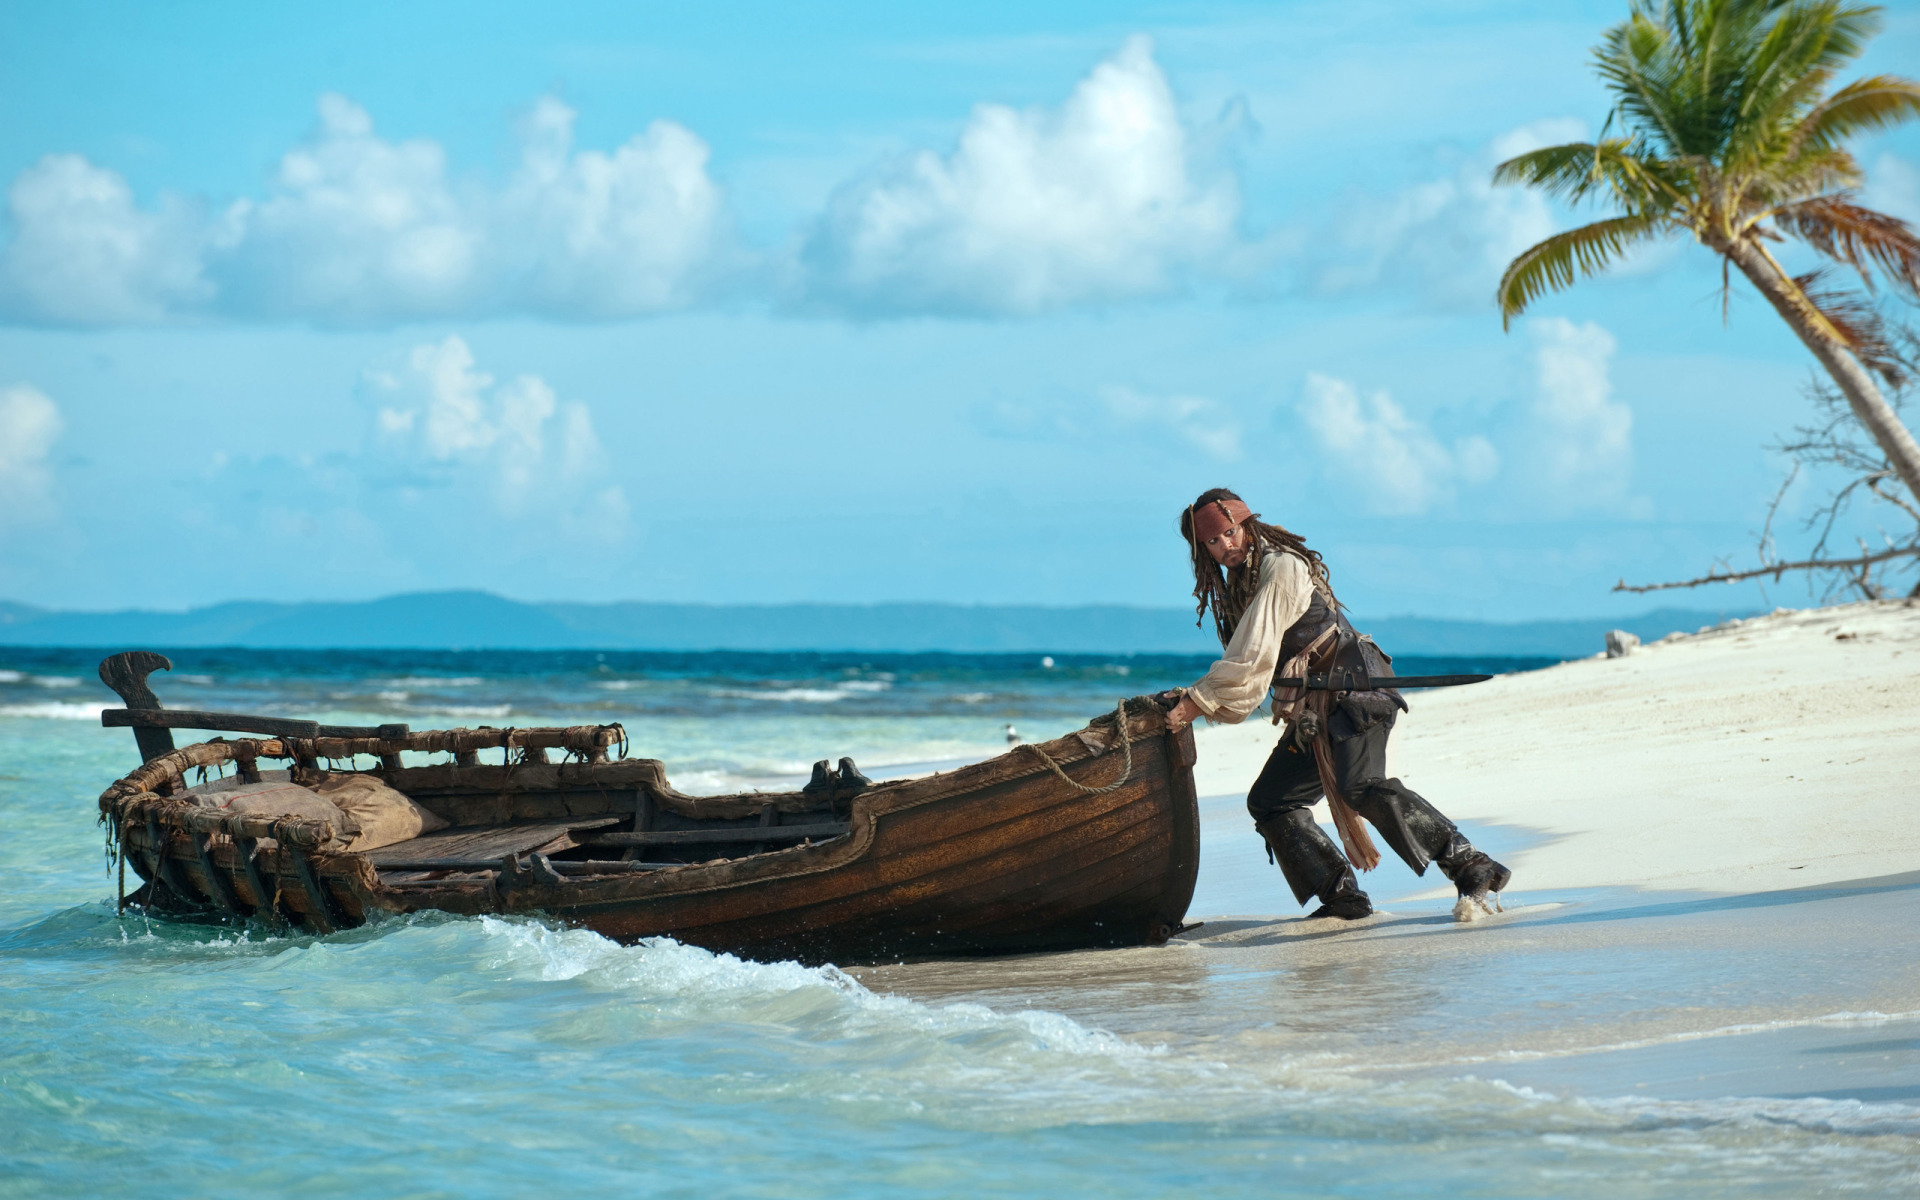 "加勒比海盗4"高清宽屏影视壁纸图赏-第2页-软件资讯-ZOL中关村在线